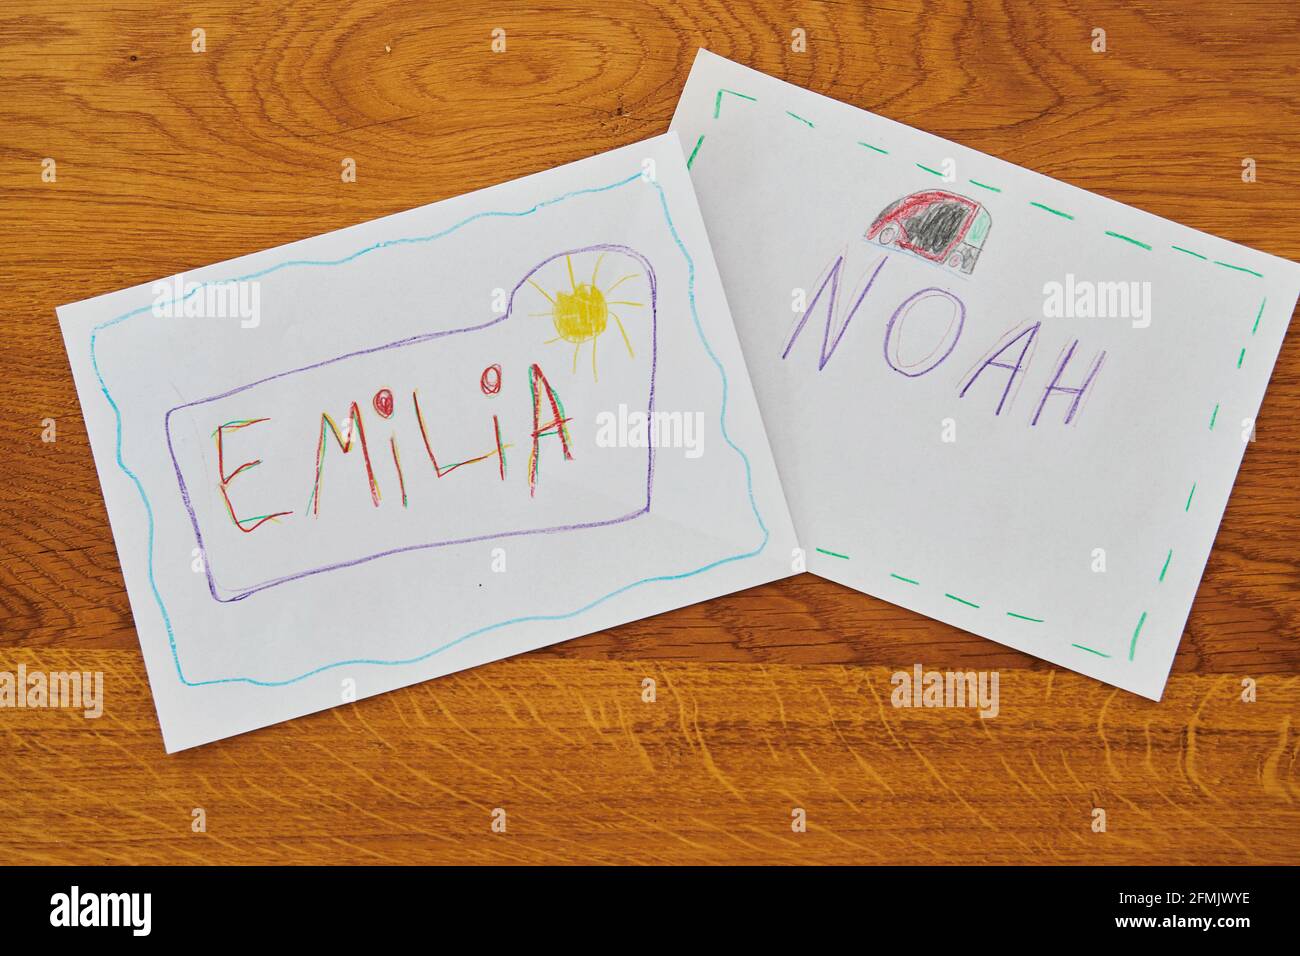 Wiesbaden, Germania. 10 maggio 2021. ILLUSTRAZIONE - 'Emilia' e 'Noah' sono  scritti a mano dei bambini su due pezzi di carta colorati. Questi nomi  furono i nomi più spesso dati ai neonati (